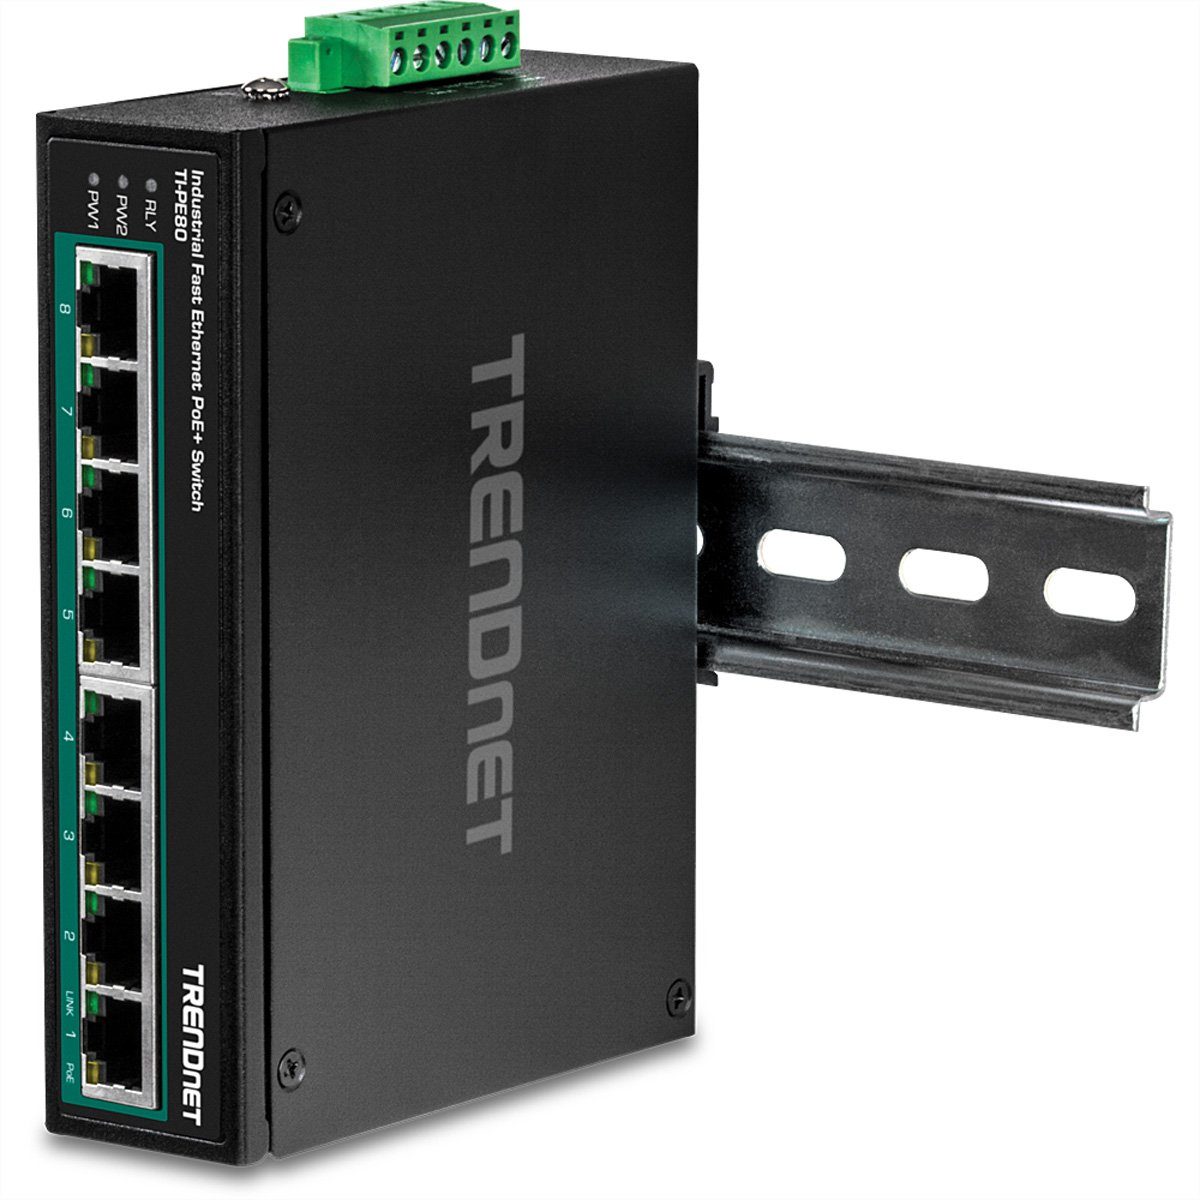 Trendnet TI-PE80 Industrial Fast Ethernet PoE+ DIN-Rail Switch 8-Port Netzwerk-Switch